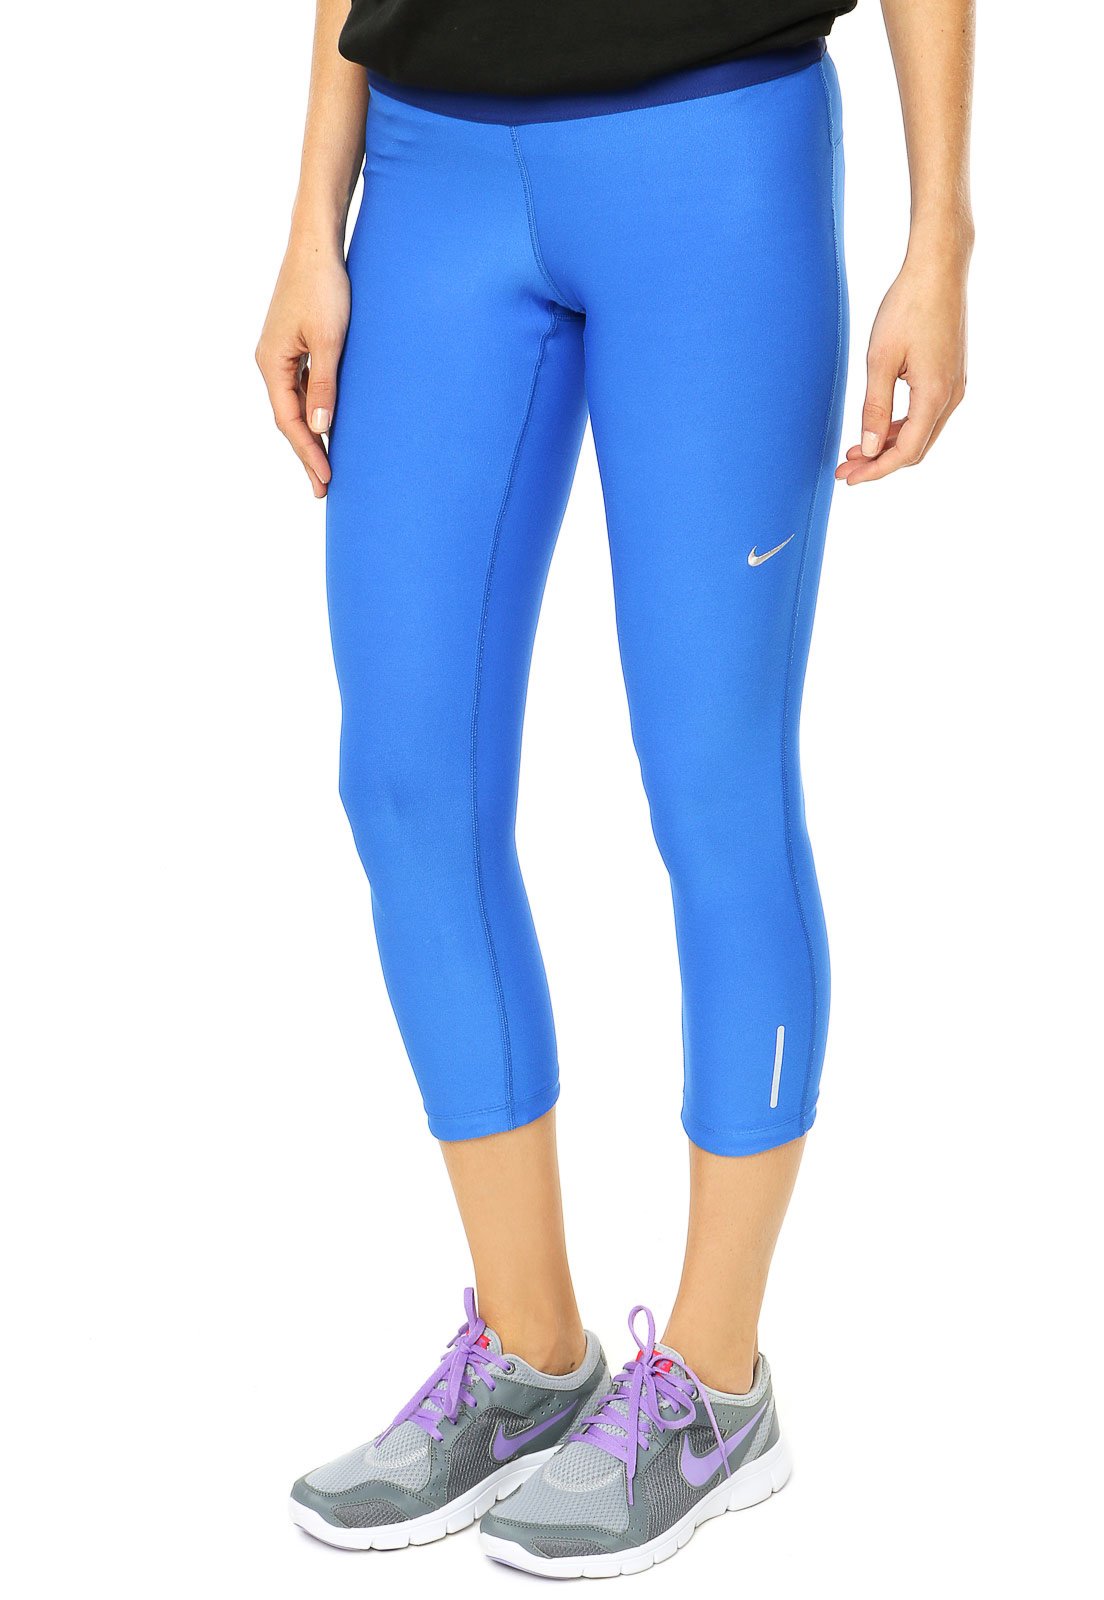 Calça Legging Nike Length Tight Azul - Compre Agora